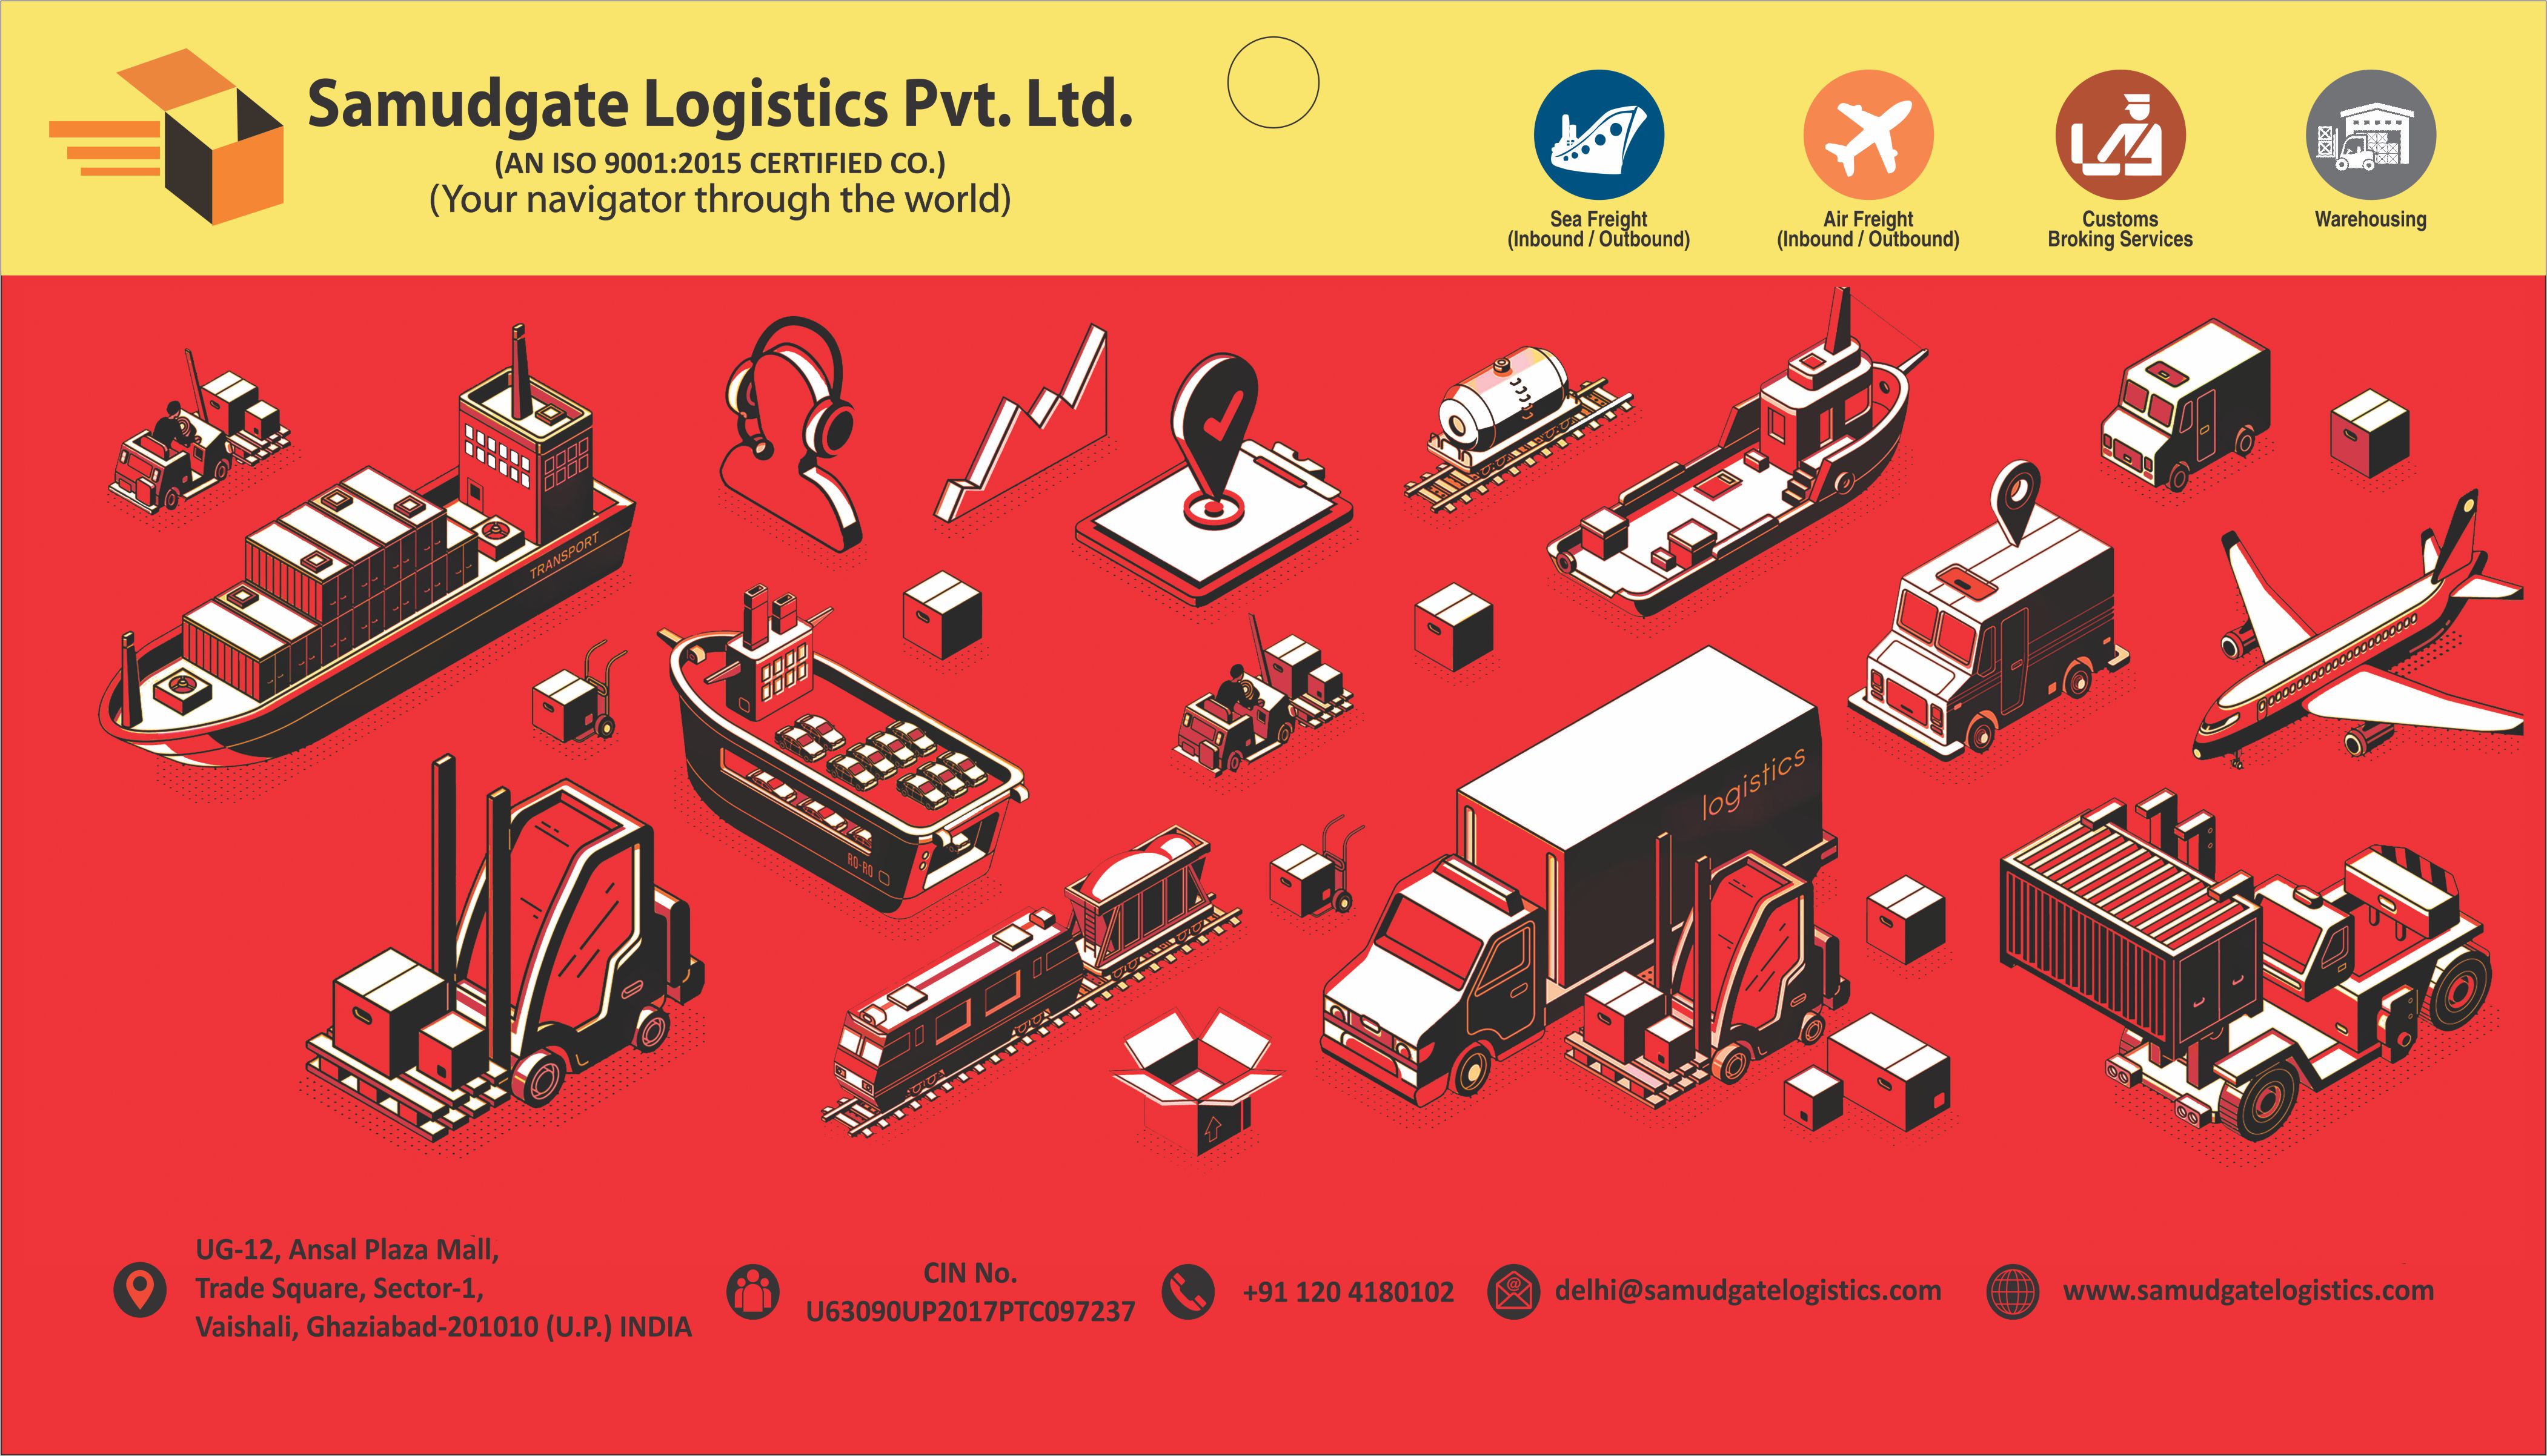 Saamudgate Logistics